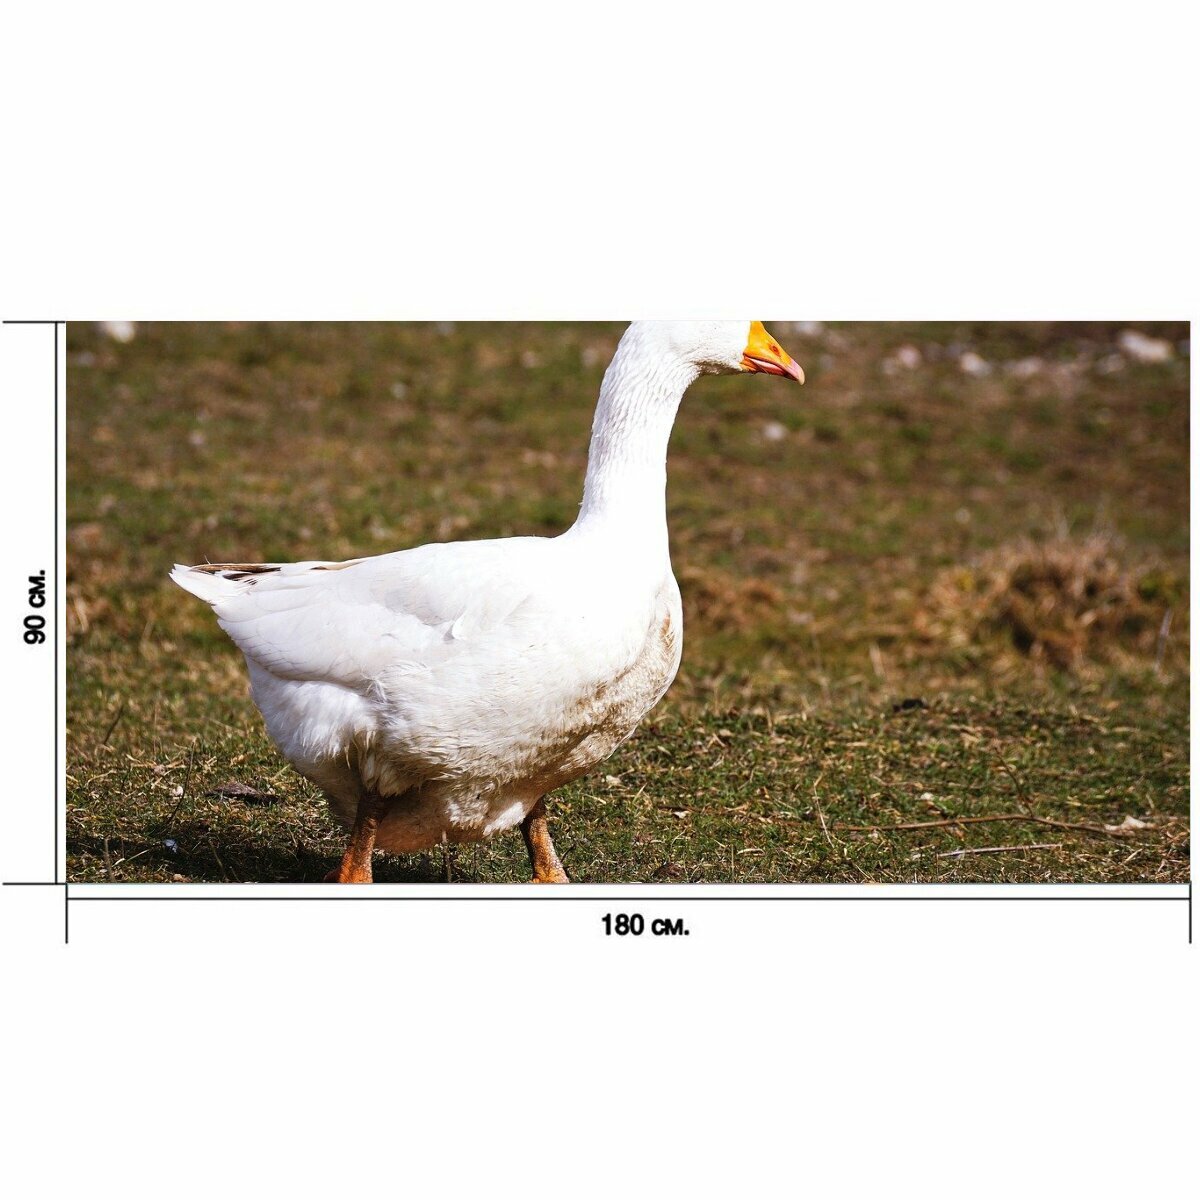 Большой постер "Гусь, белый, птица" 180 x 90 см. для интерьера